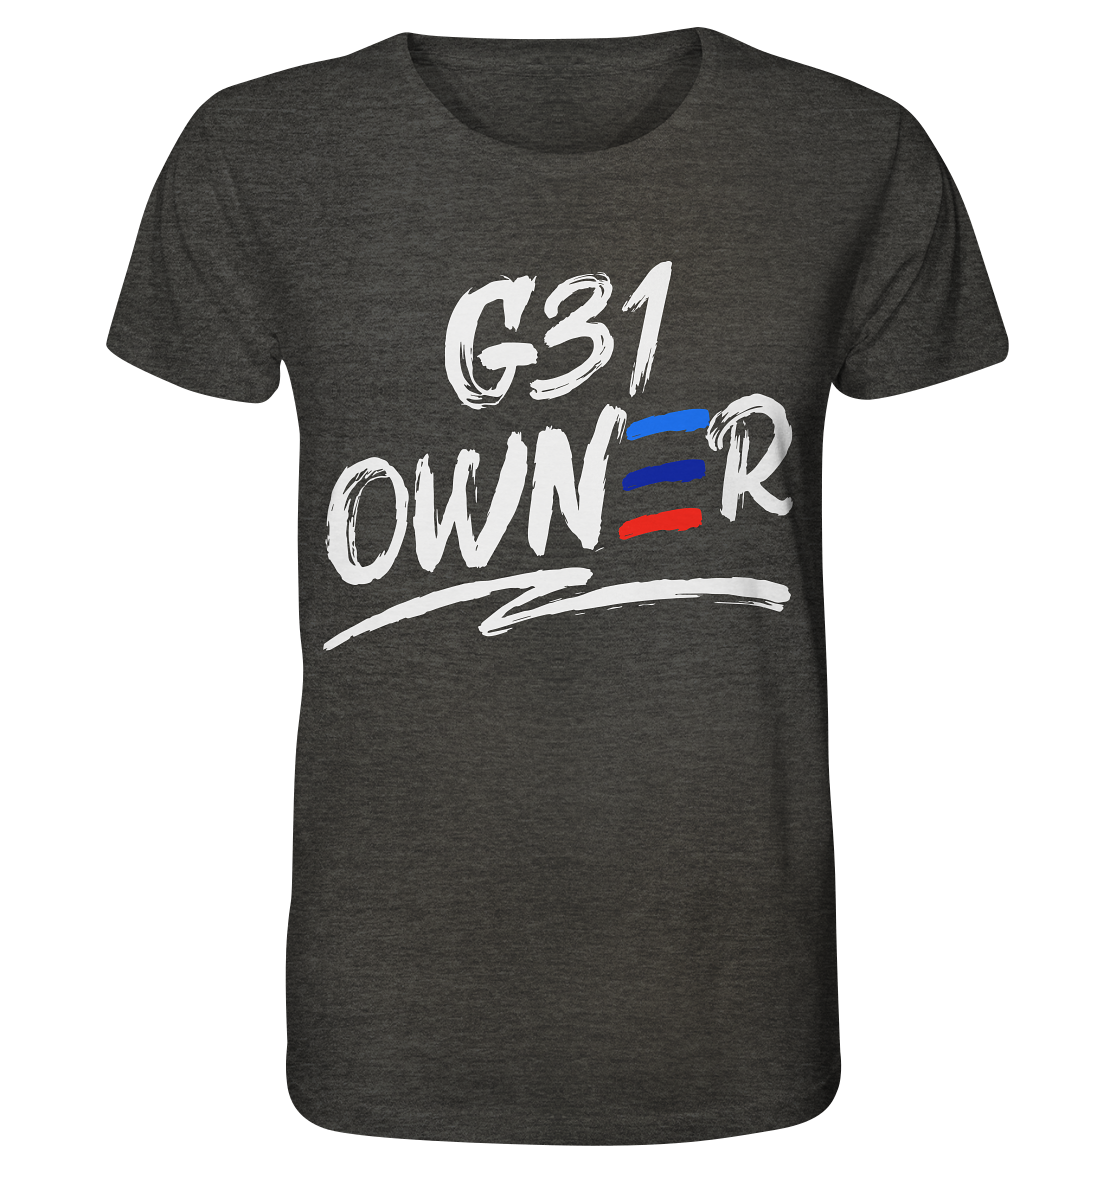 COD_BGKG31OWNER - Organic Shirt (meliert)